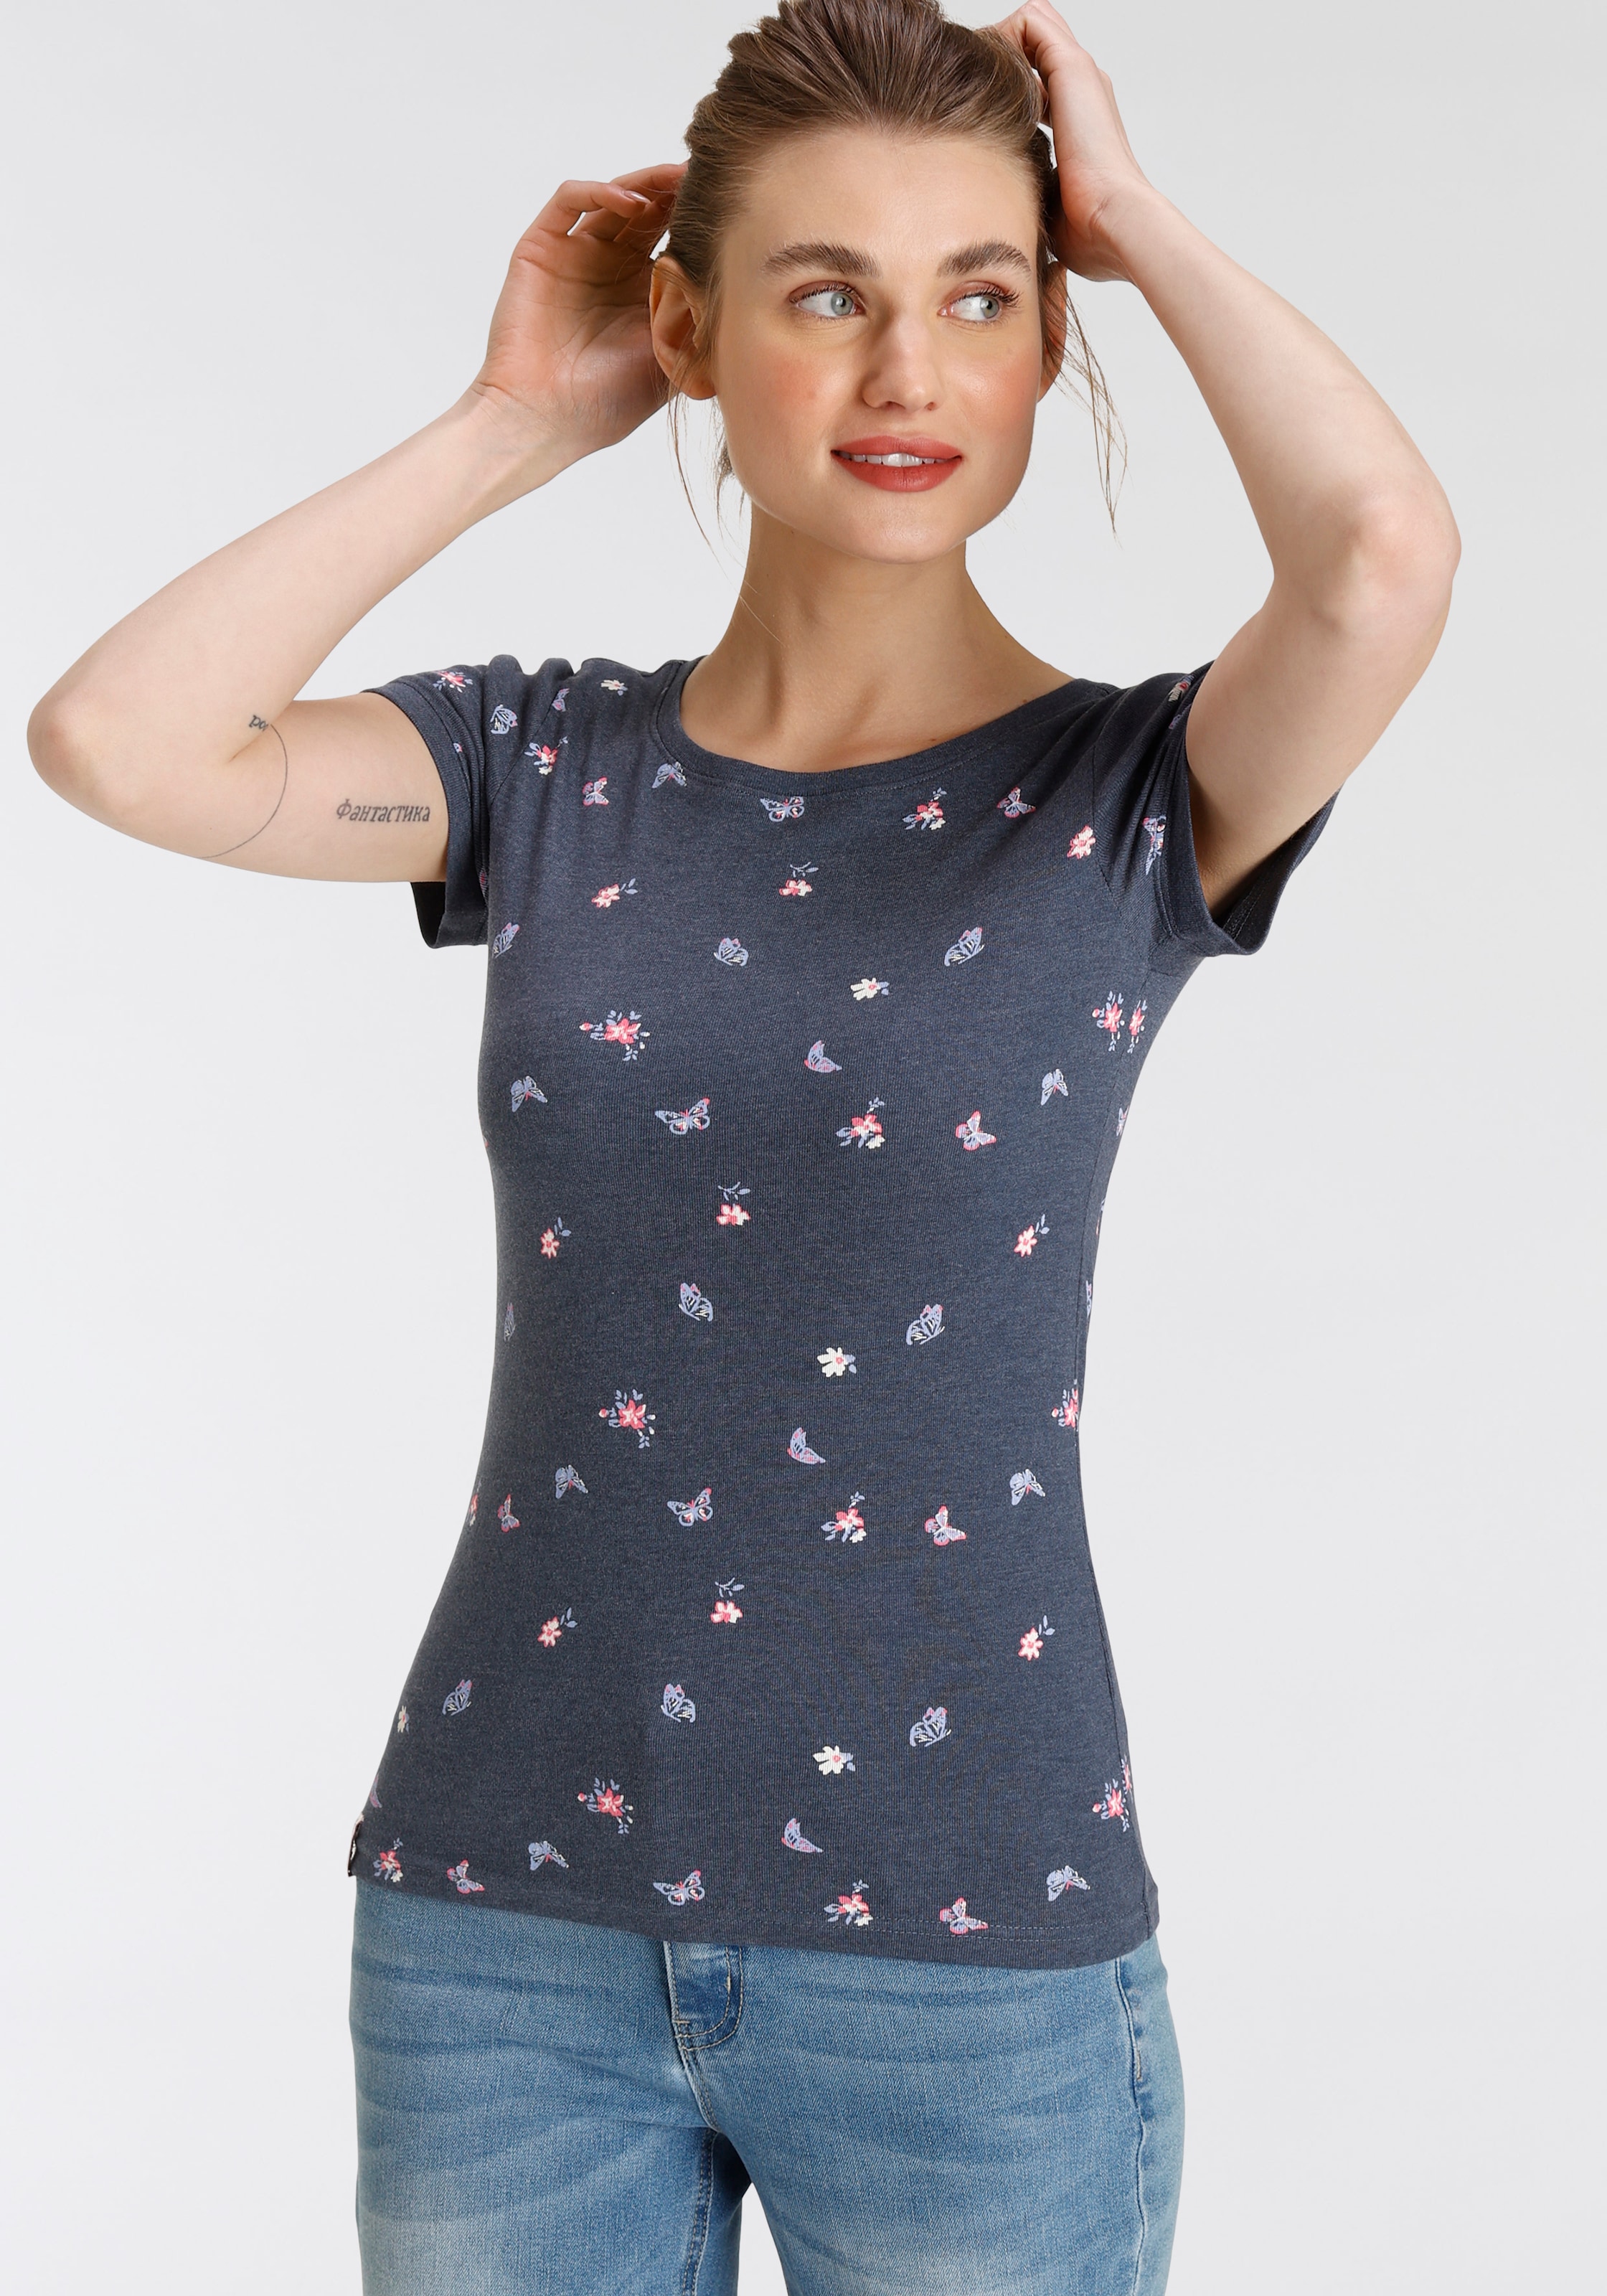 KangaROOS T-Shirt, mit Blumen - Schmetterling OTTOversand NEUE bei KOLLEKTION & Alloverdruck - süßem